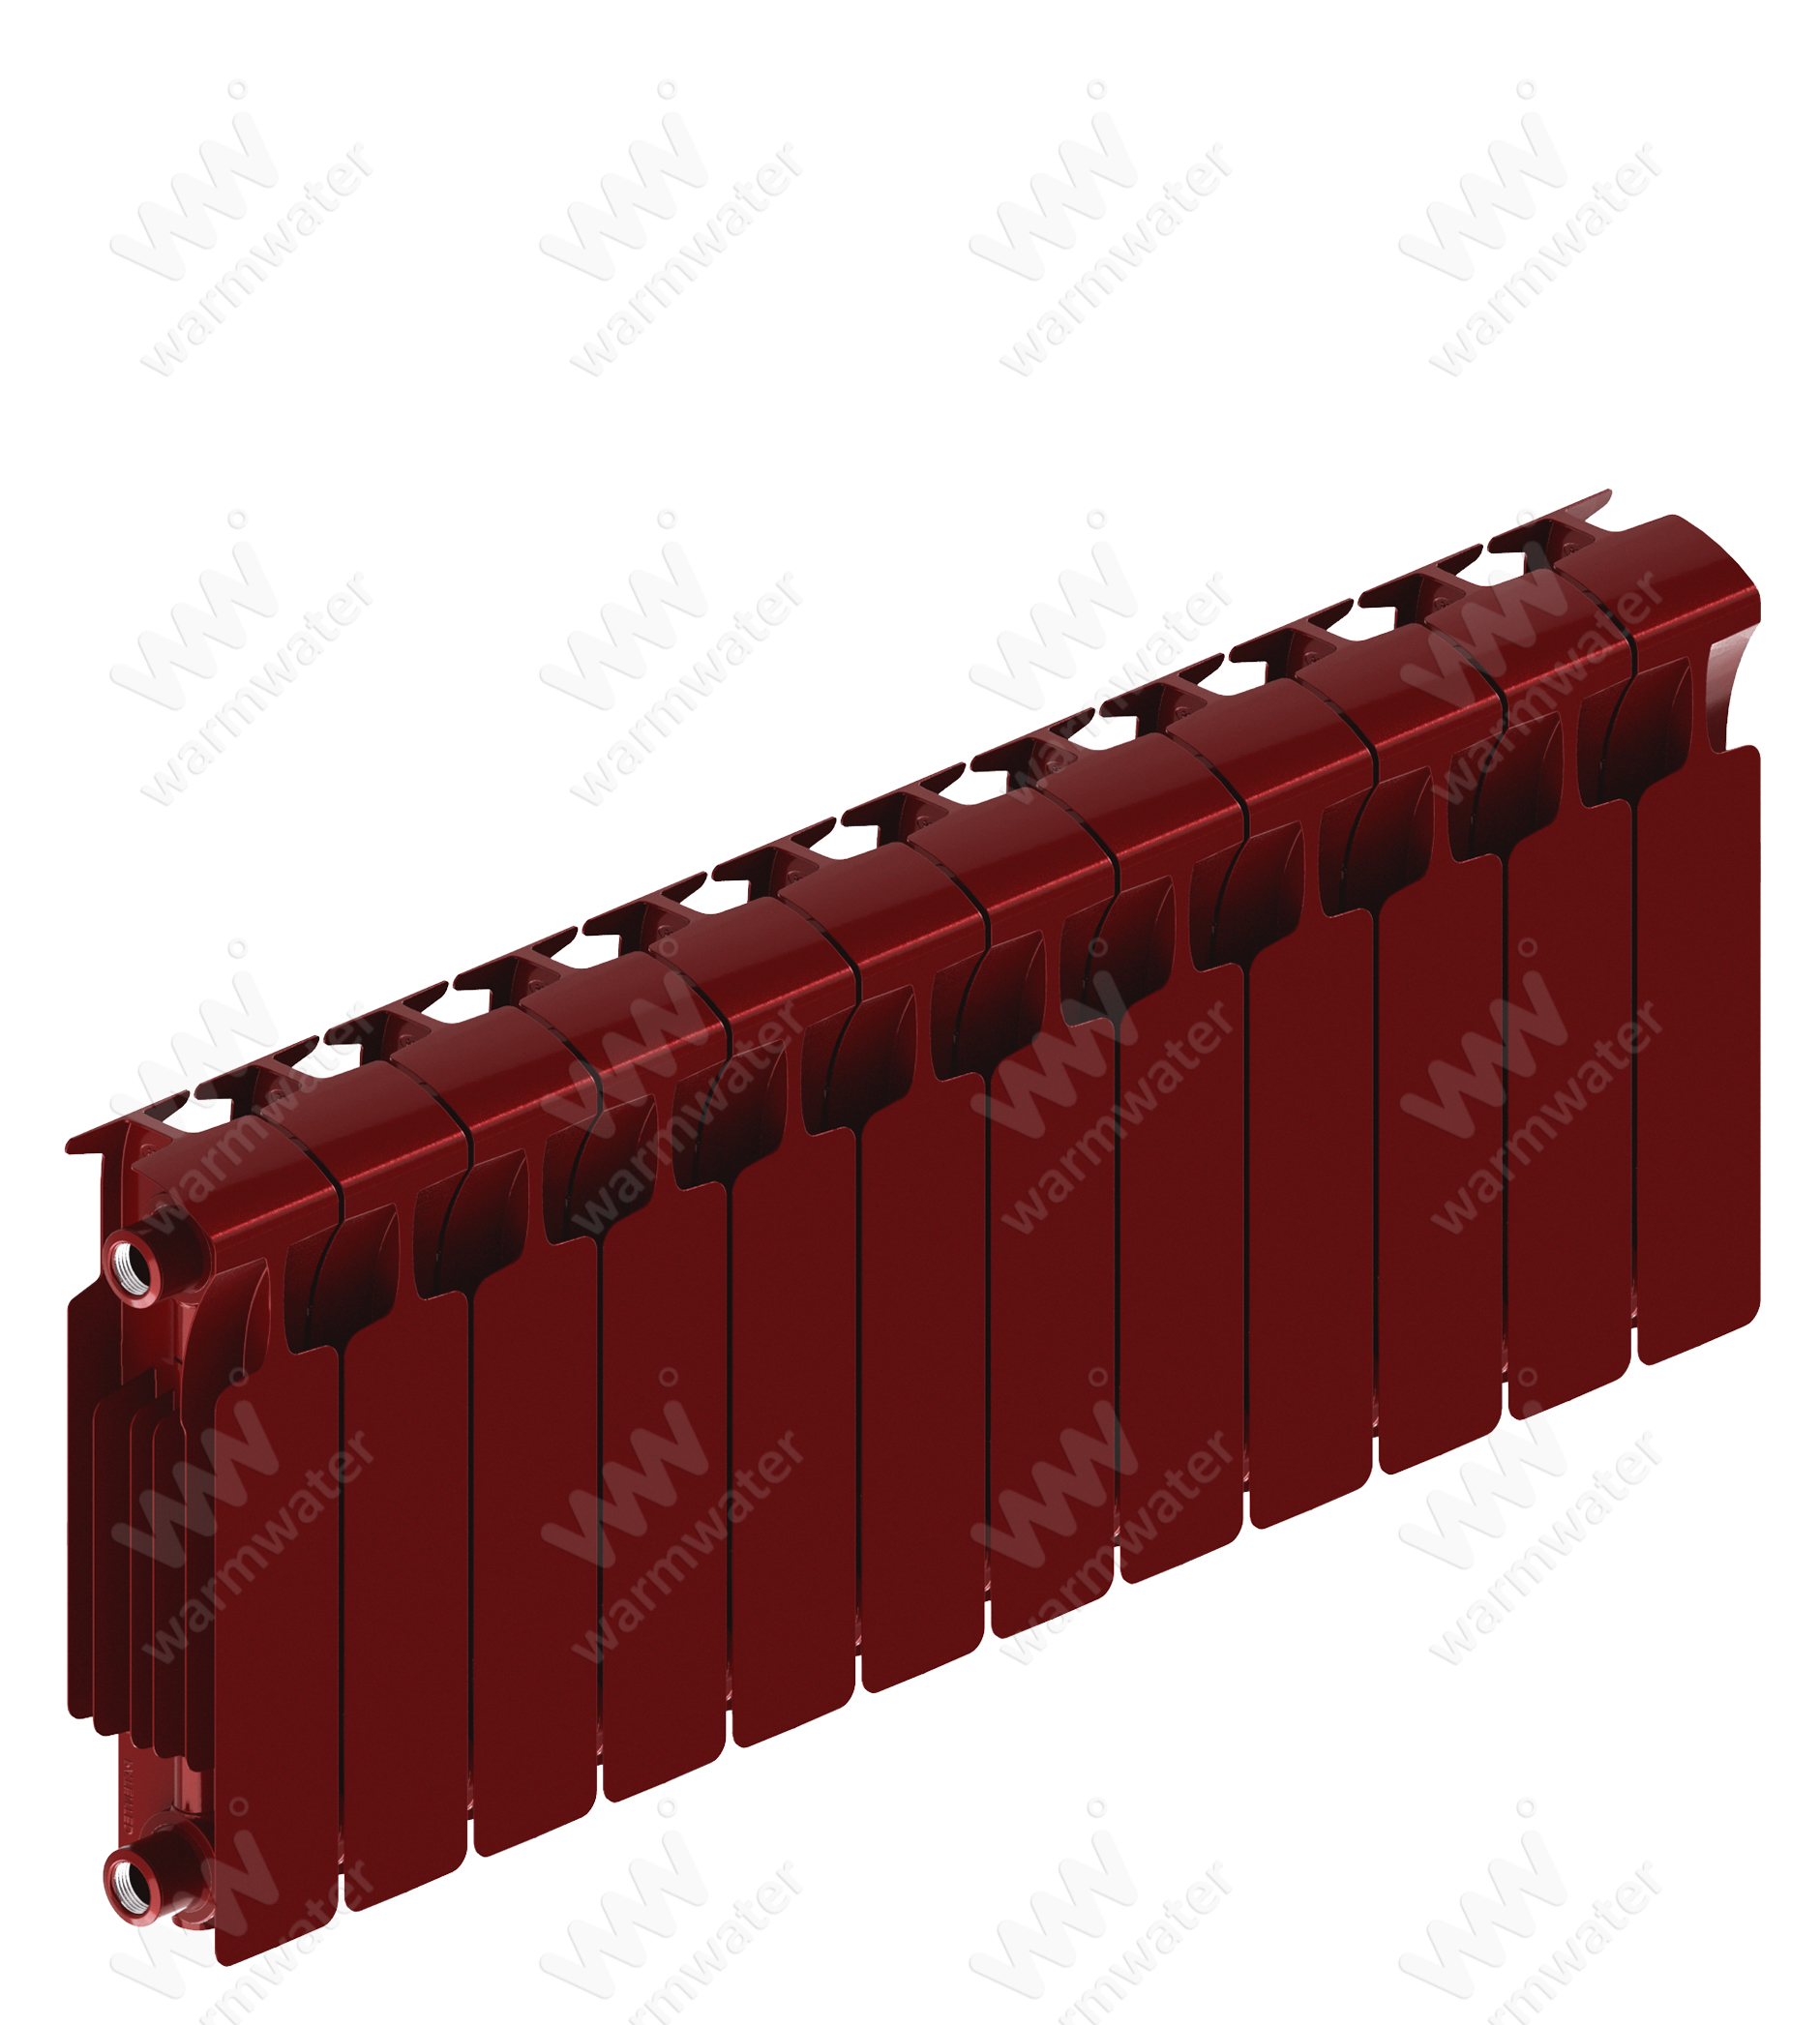 Радиатор биметаллический Rifar Monolit Ventil 300x12 секций, №89VR, красный (бордо)